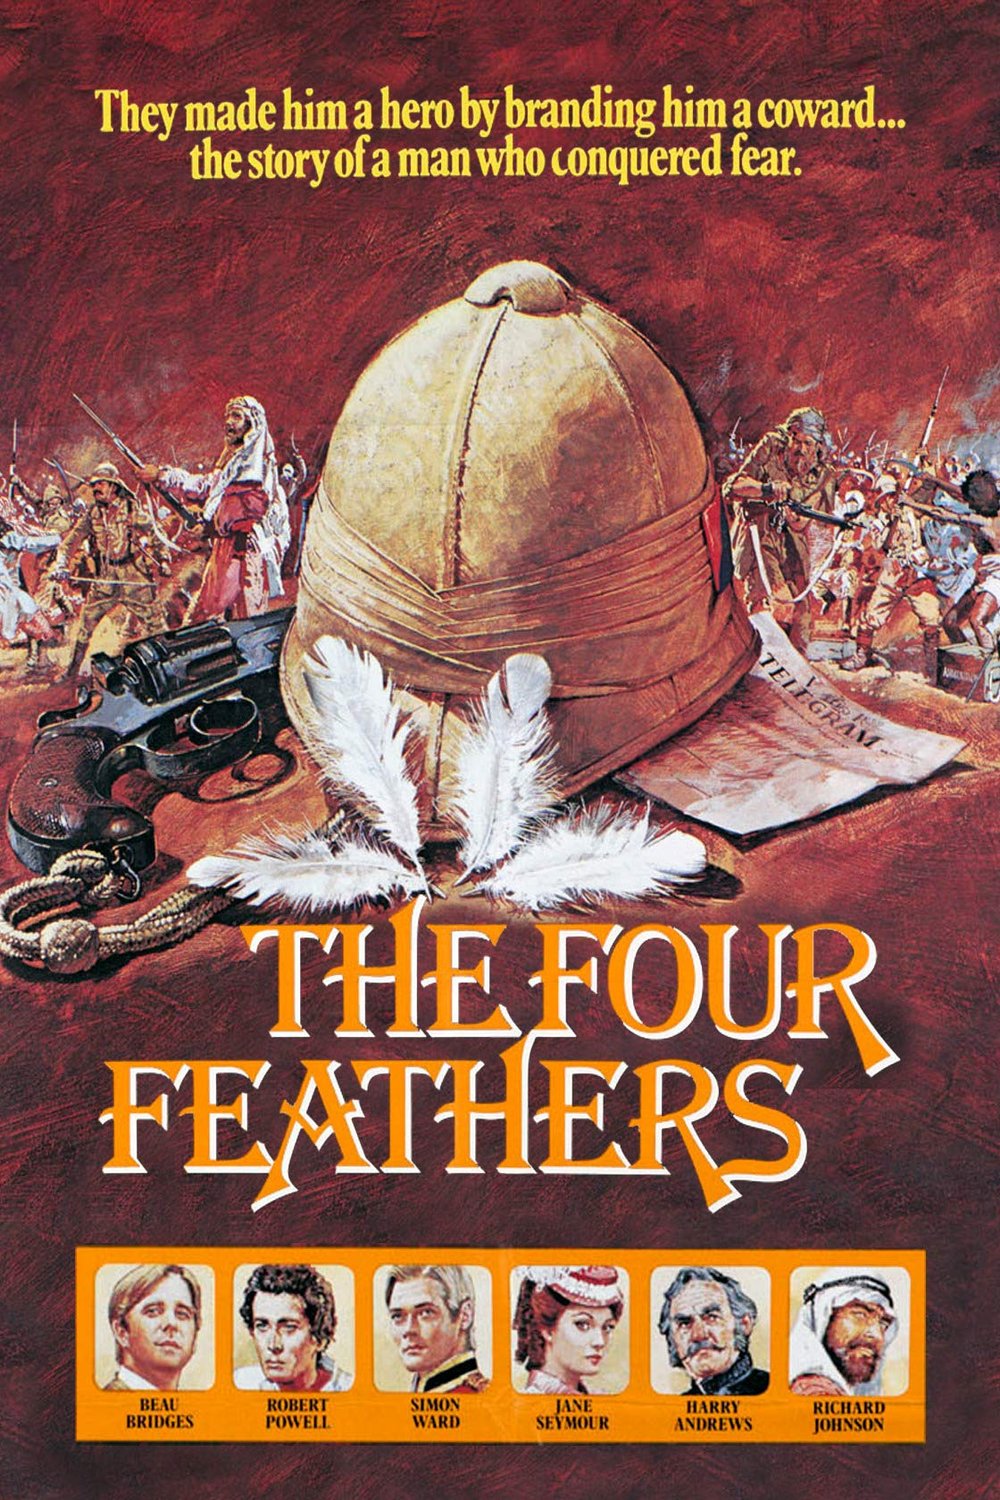 L'affiche du film The Four Feathers